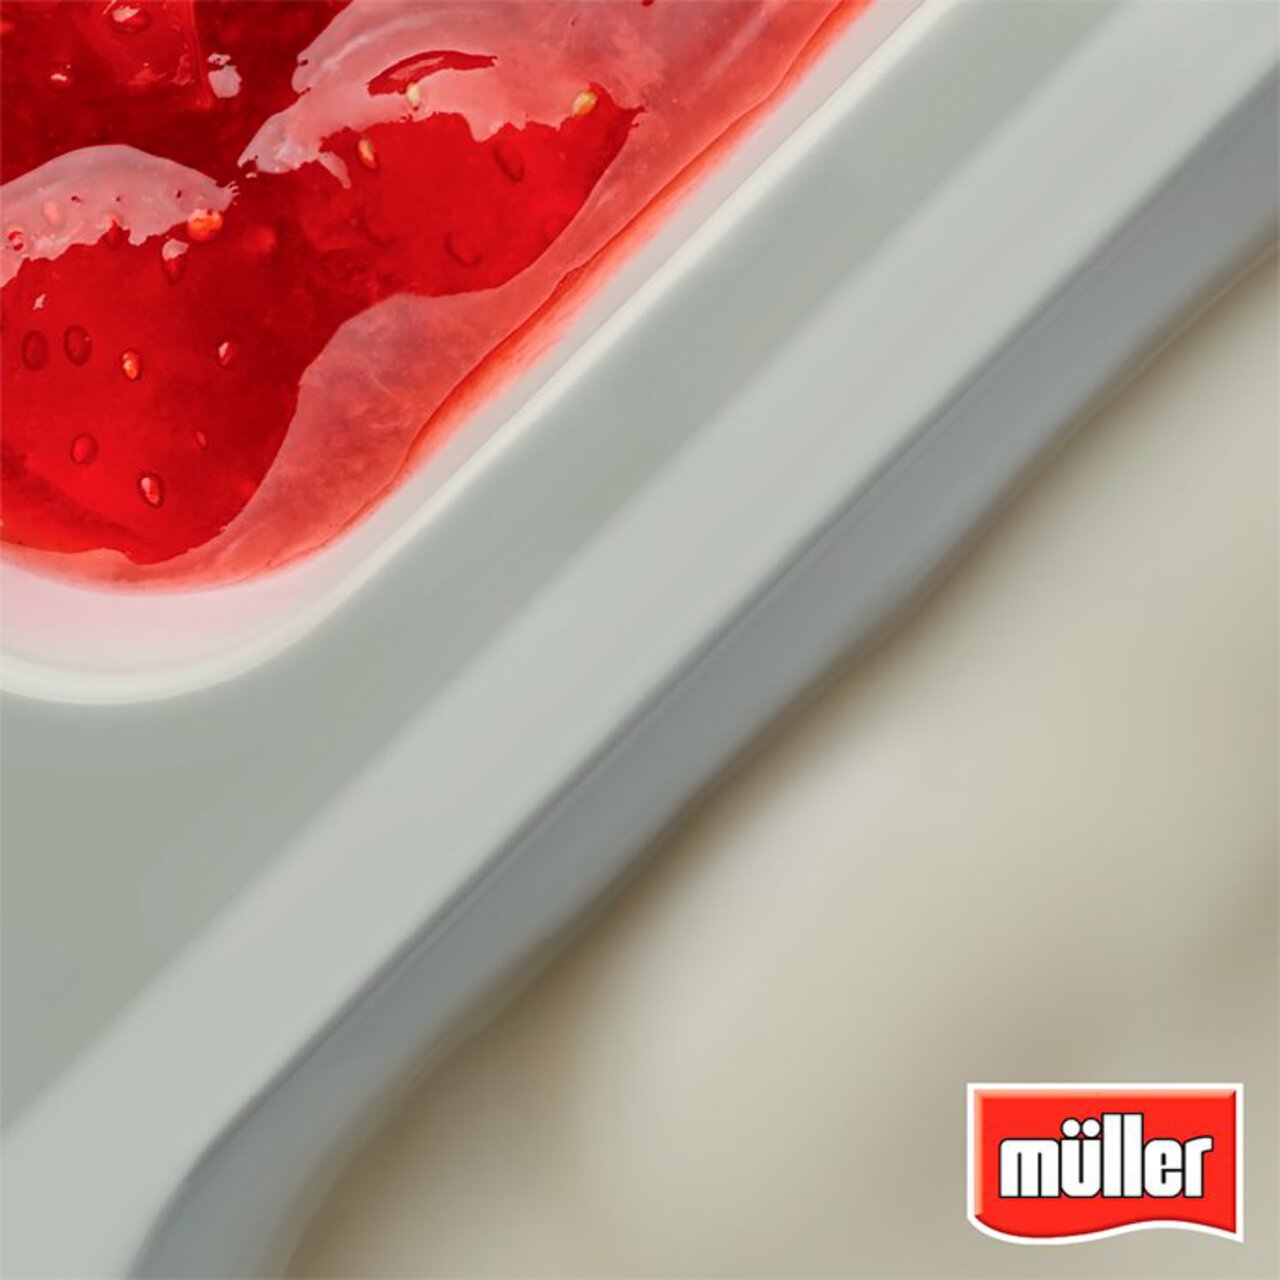 Muller Corner Red Cherry Yogurt 136g